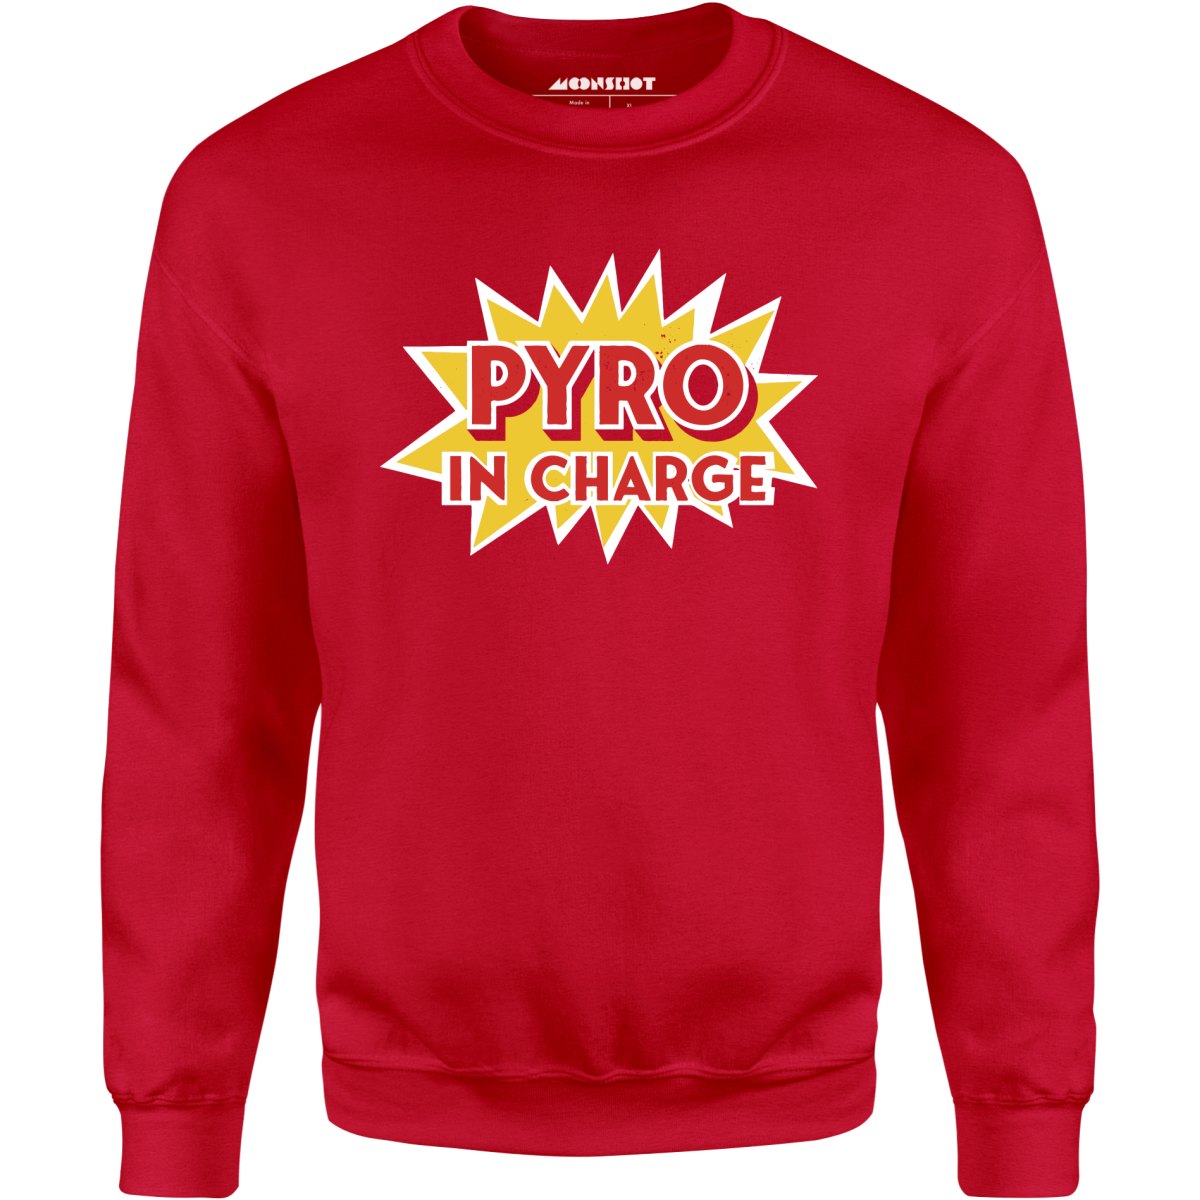 Pyro in Charge - Unisex Sweatshirt